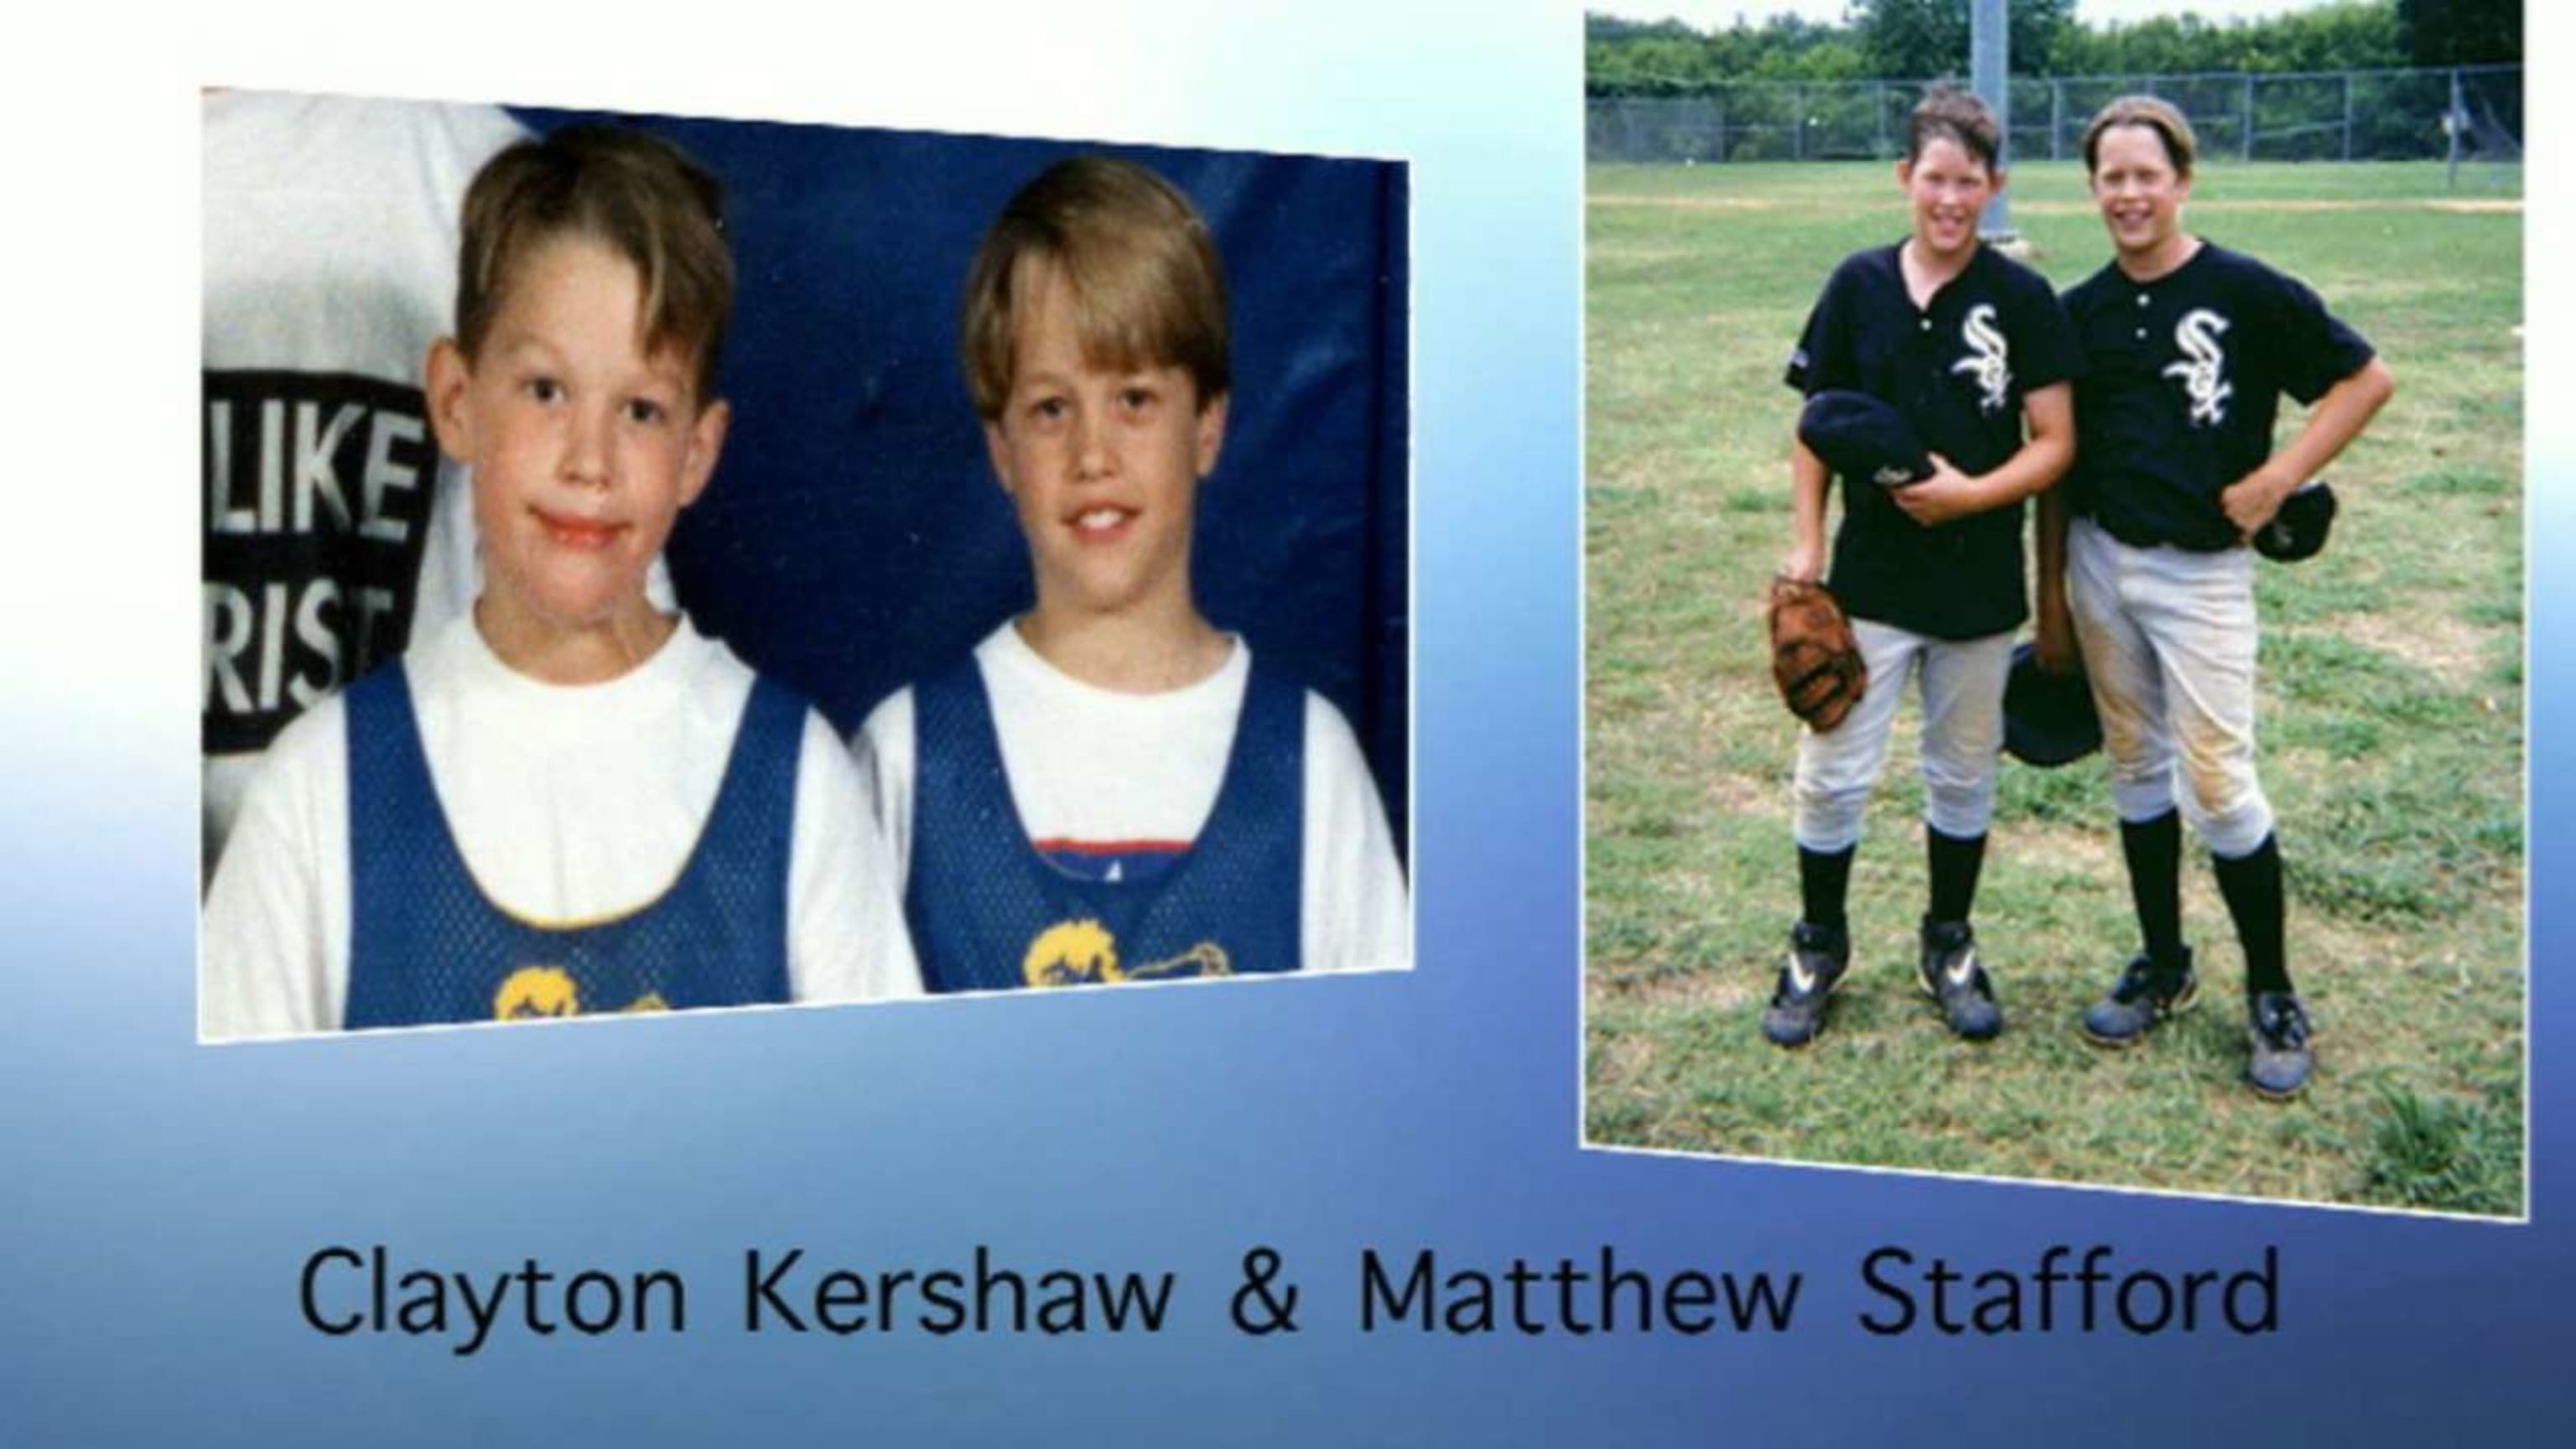 Is Detroit Lions' Matthew Stafford jealous of Clayton Kershaw?